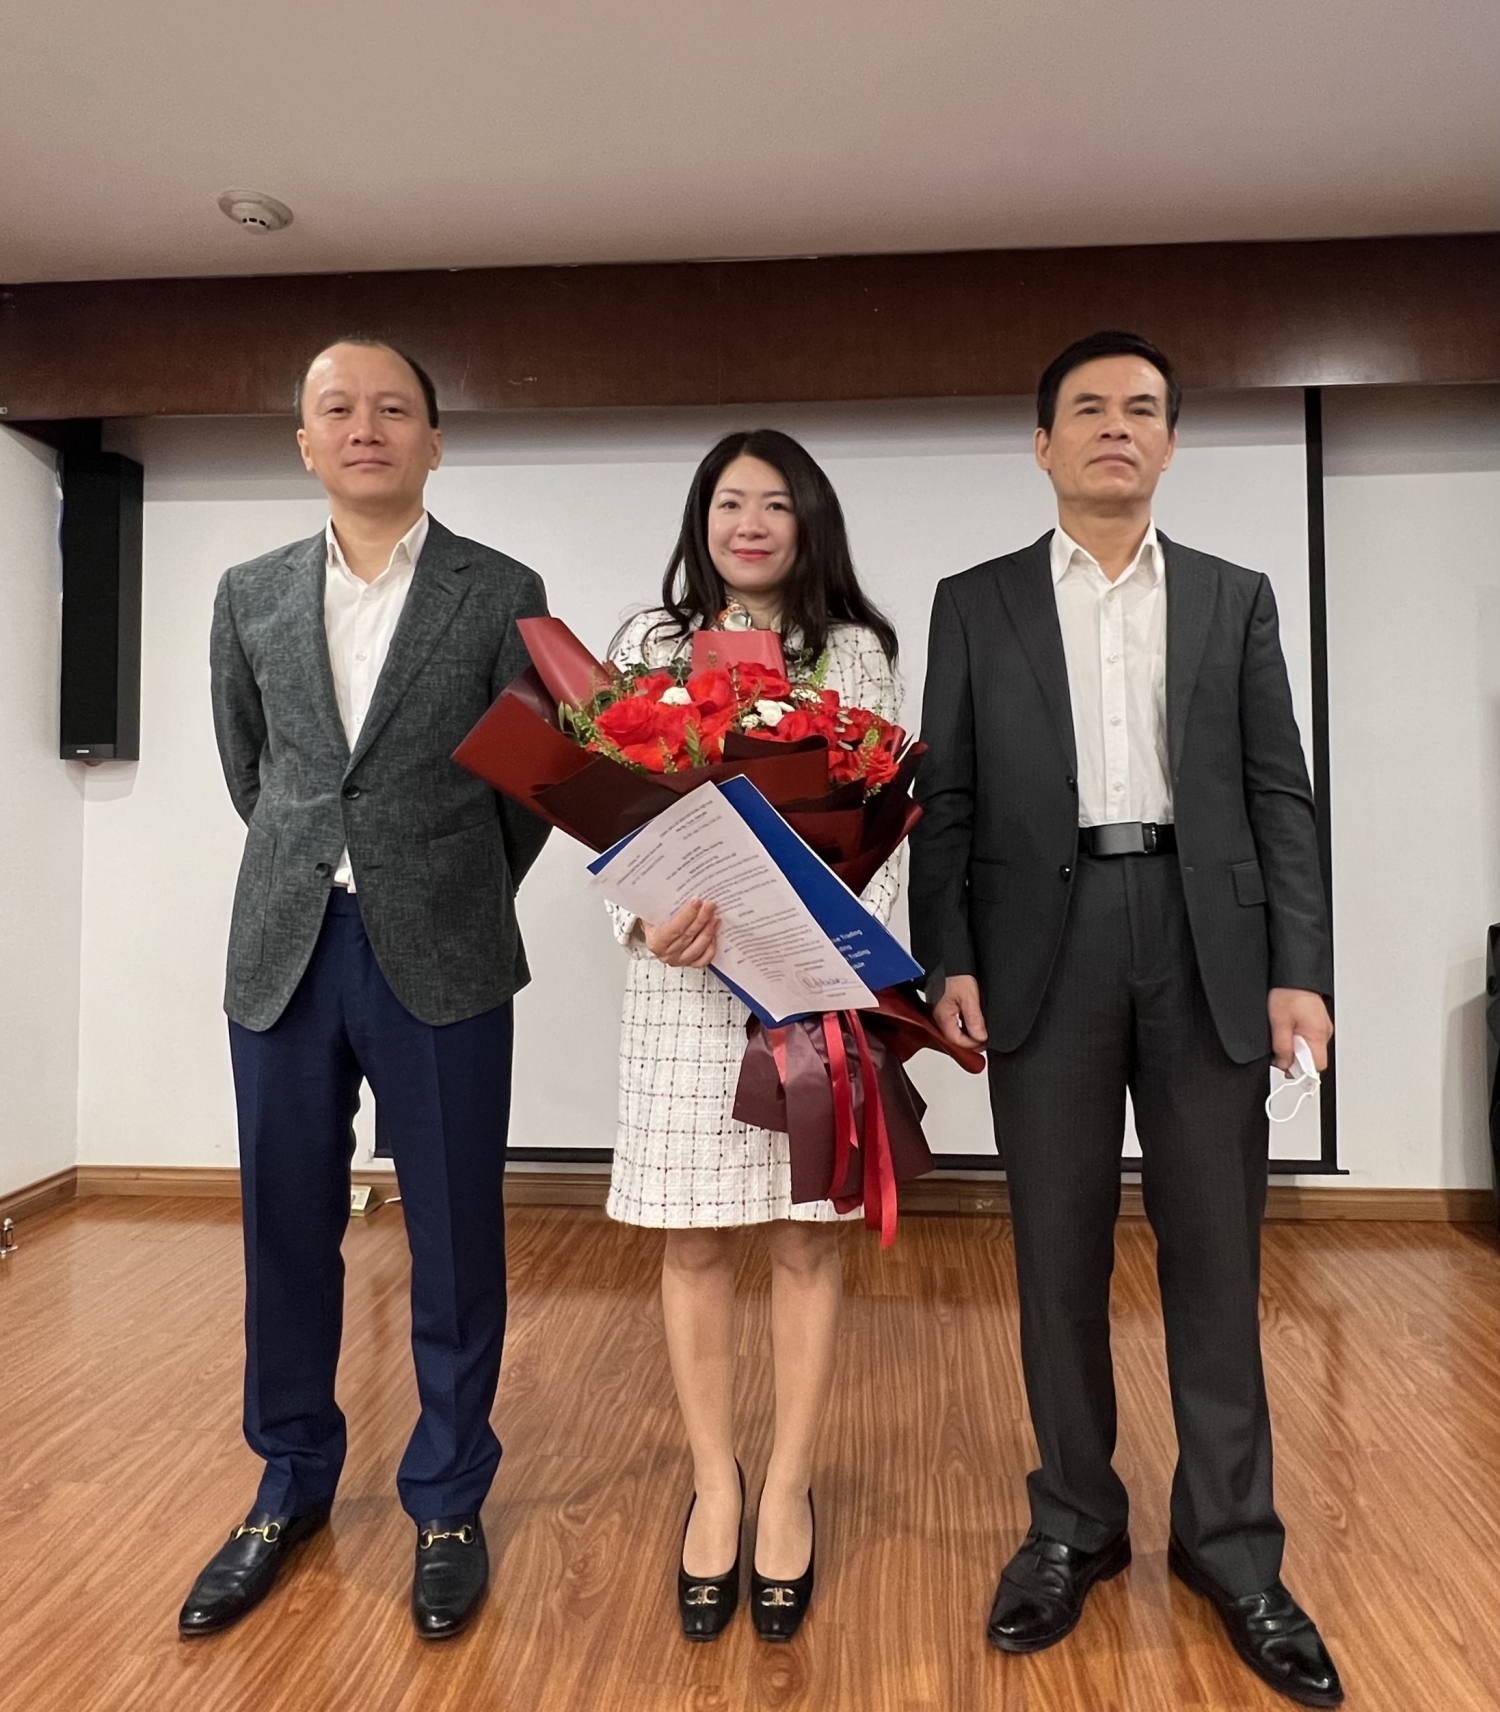 Lãnh đạo PSI trao quyết định bổ nhiệm và chúc mừng bà Phan Quỳnh Nga